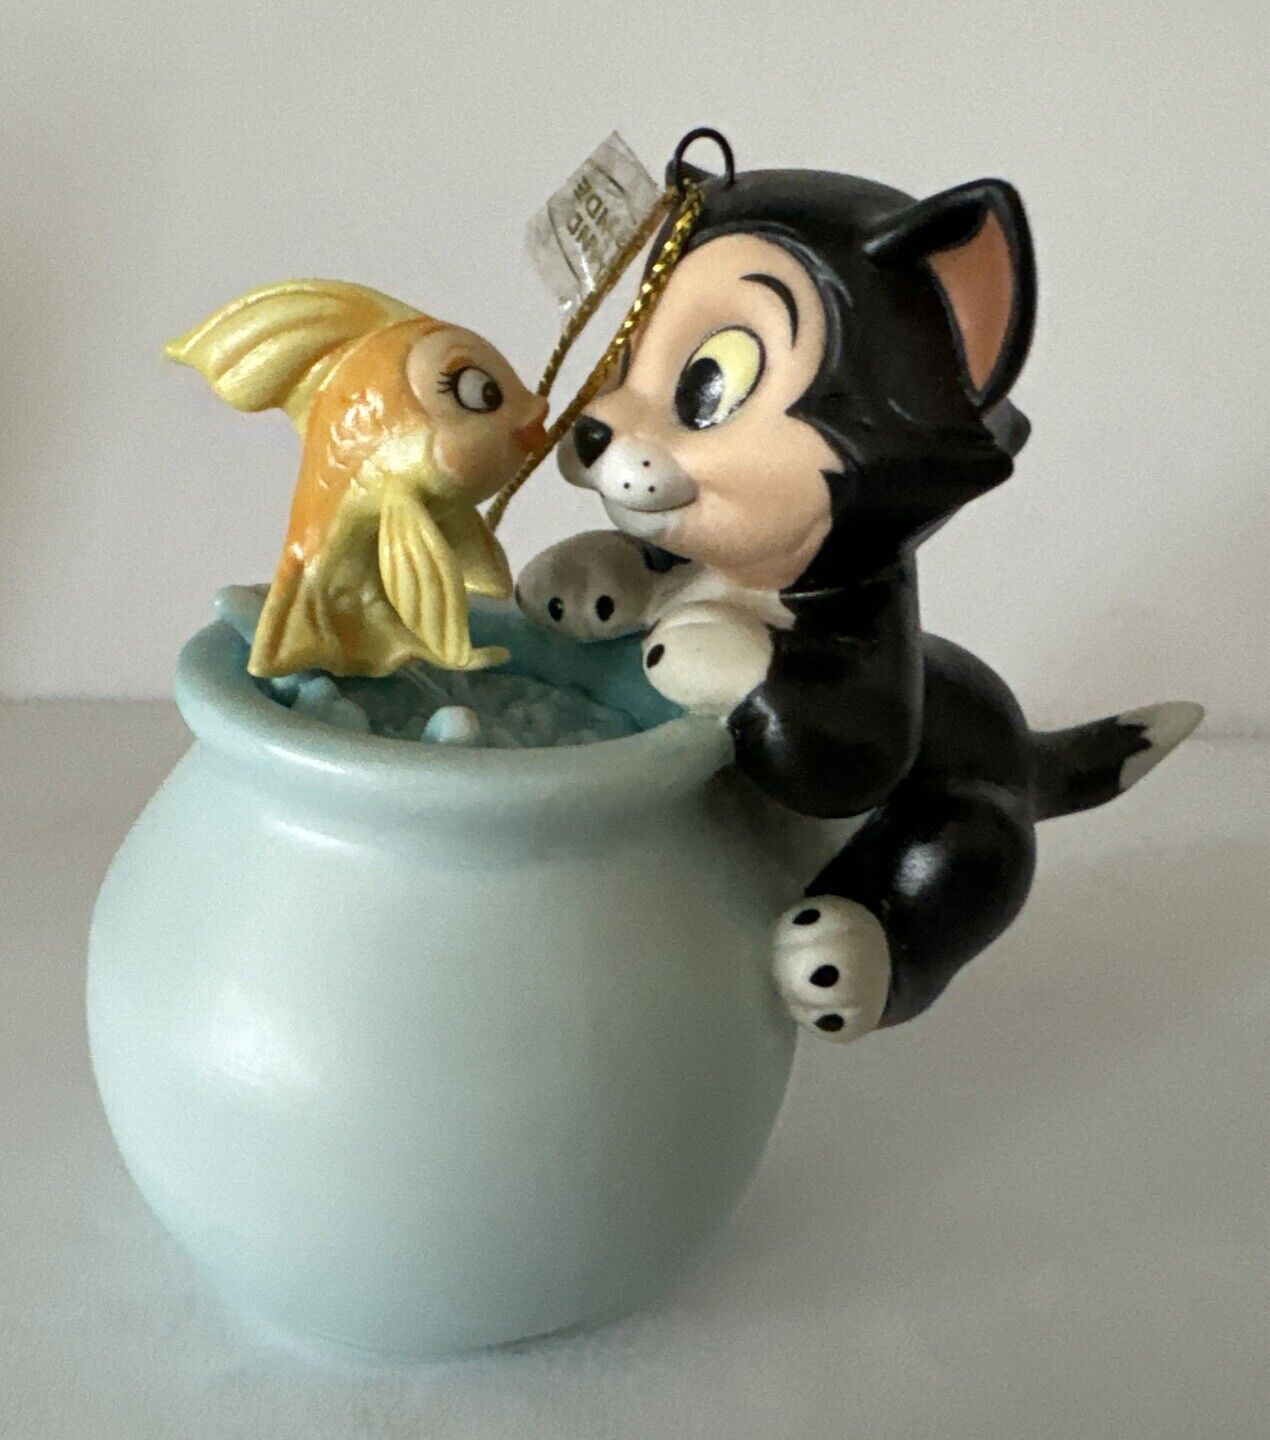 WDCC Pinocchio Figaro & Cleo Purrfect Kiss Ornament Original Box & COA 2001